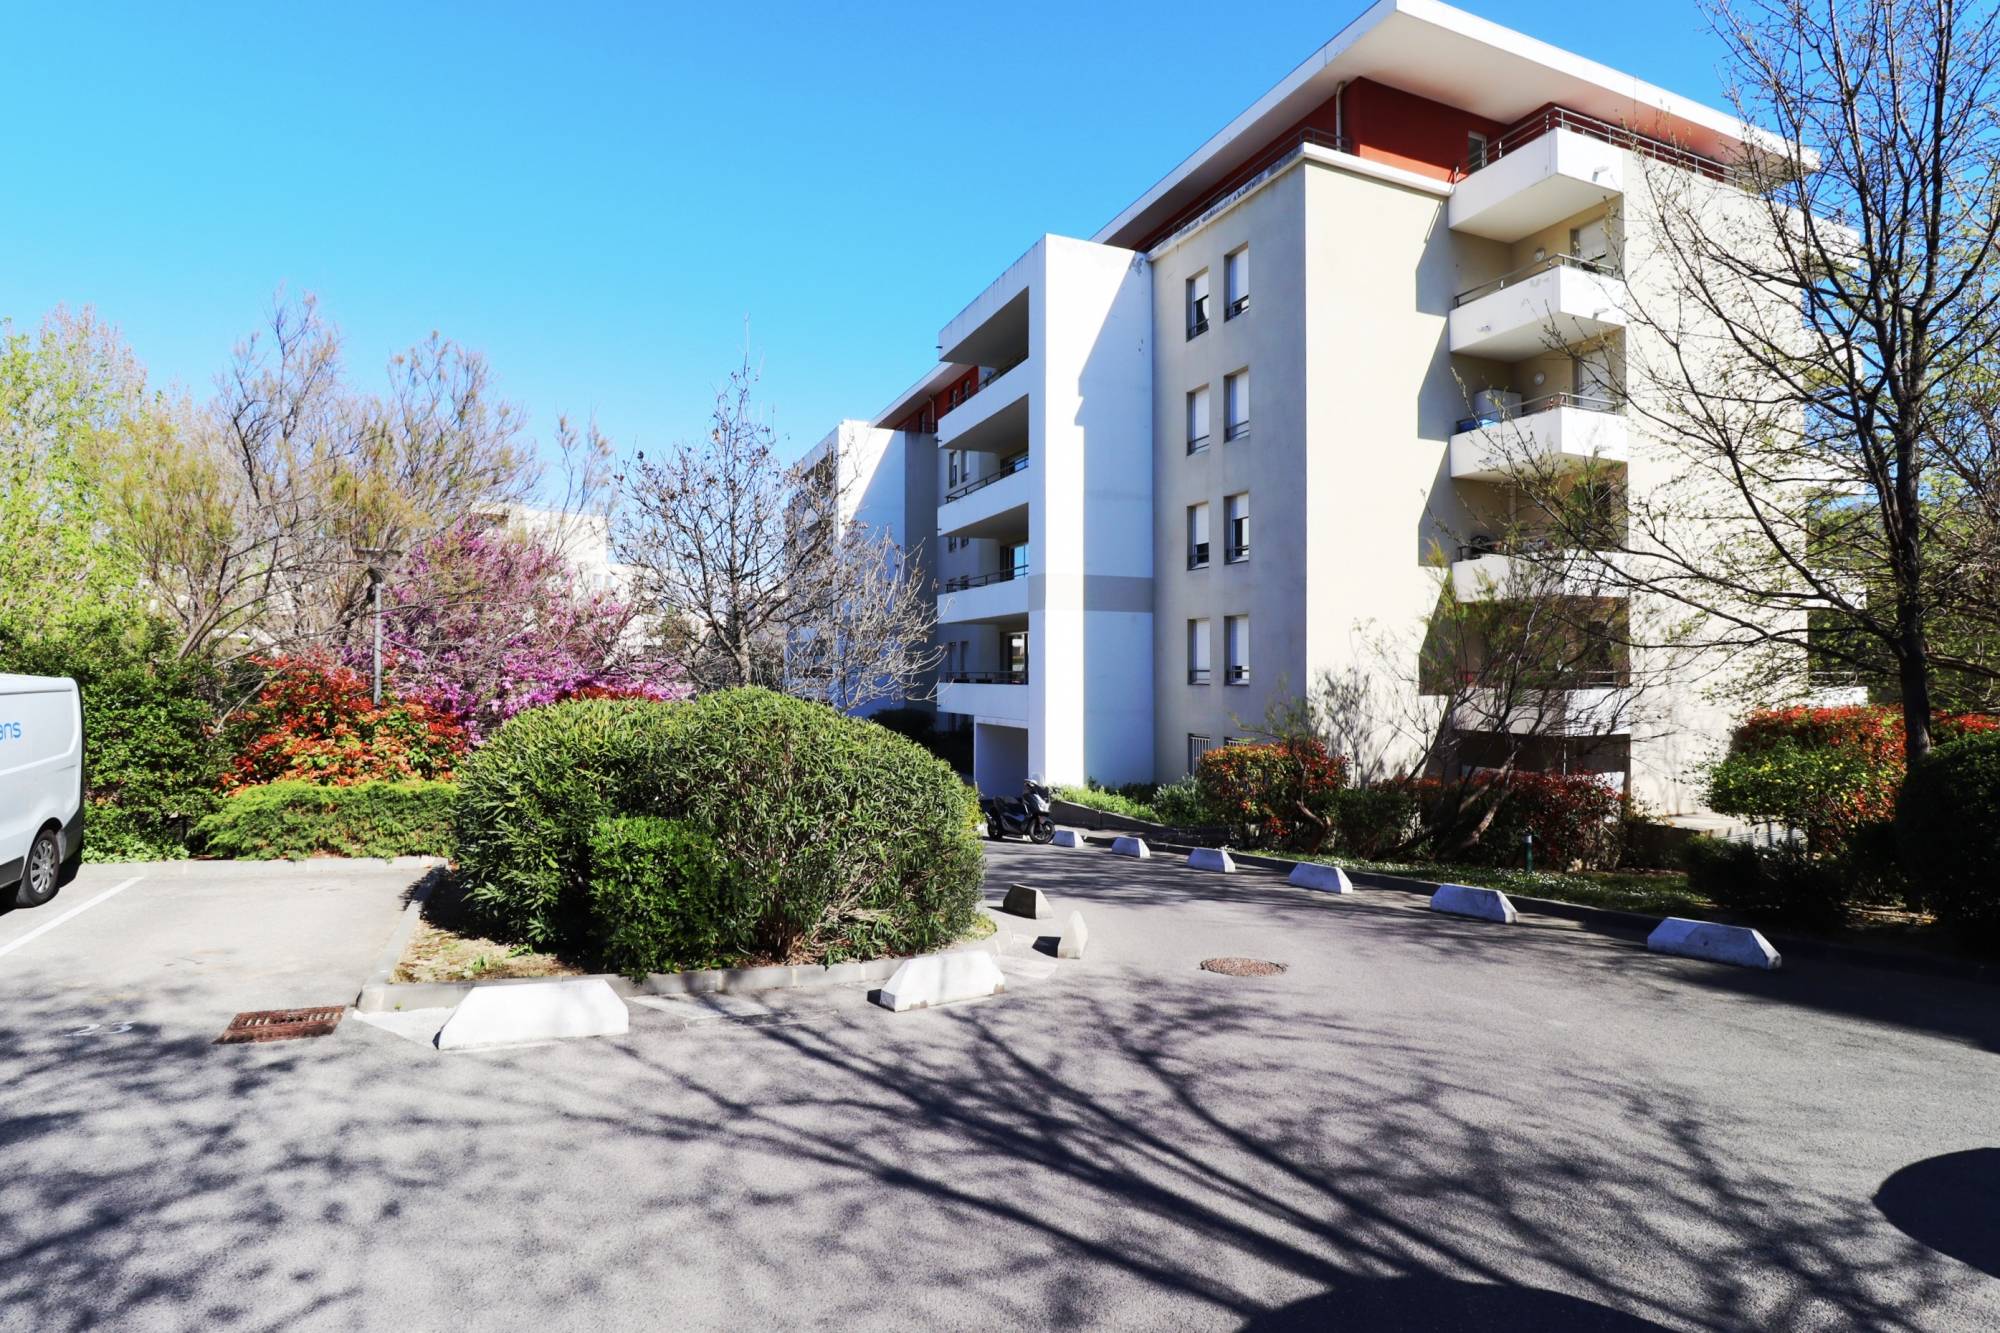 A vendre appartement 4 pièces avec terrasses et garage double en sous sol  Grognarde / La pomme 13011 Marseille